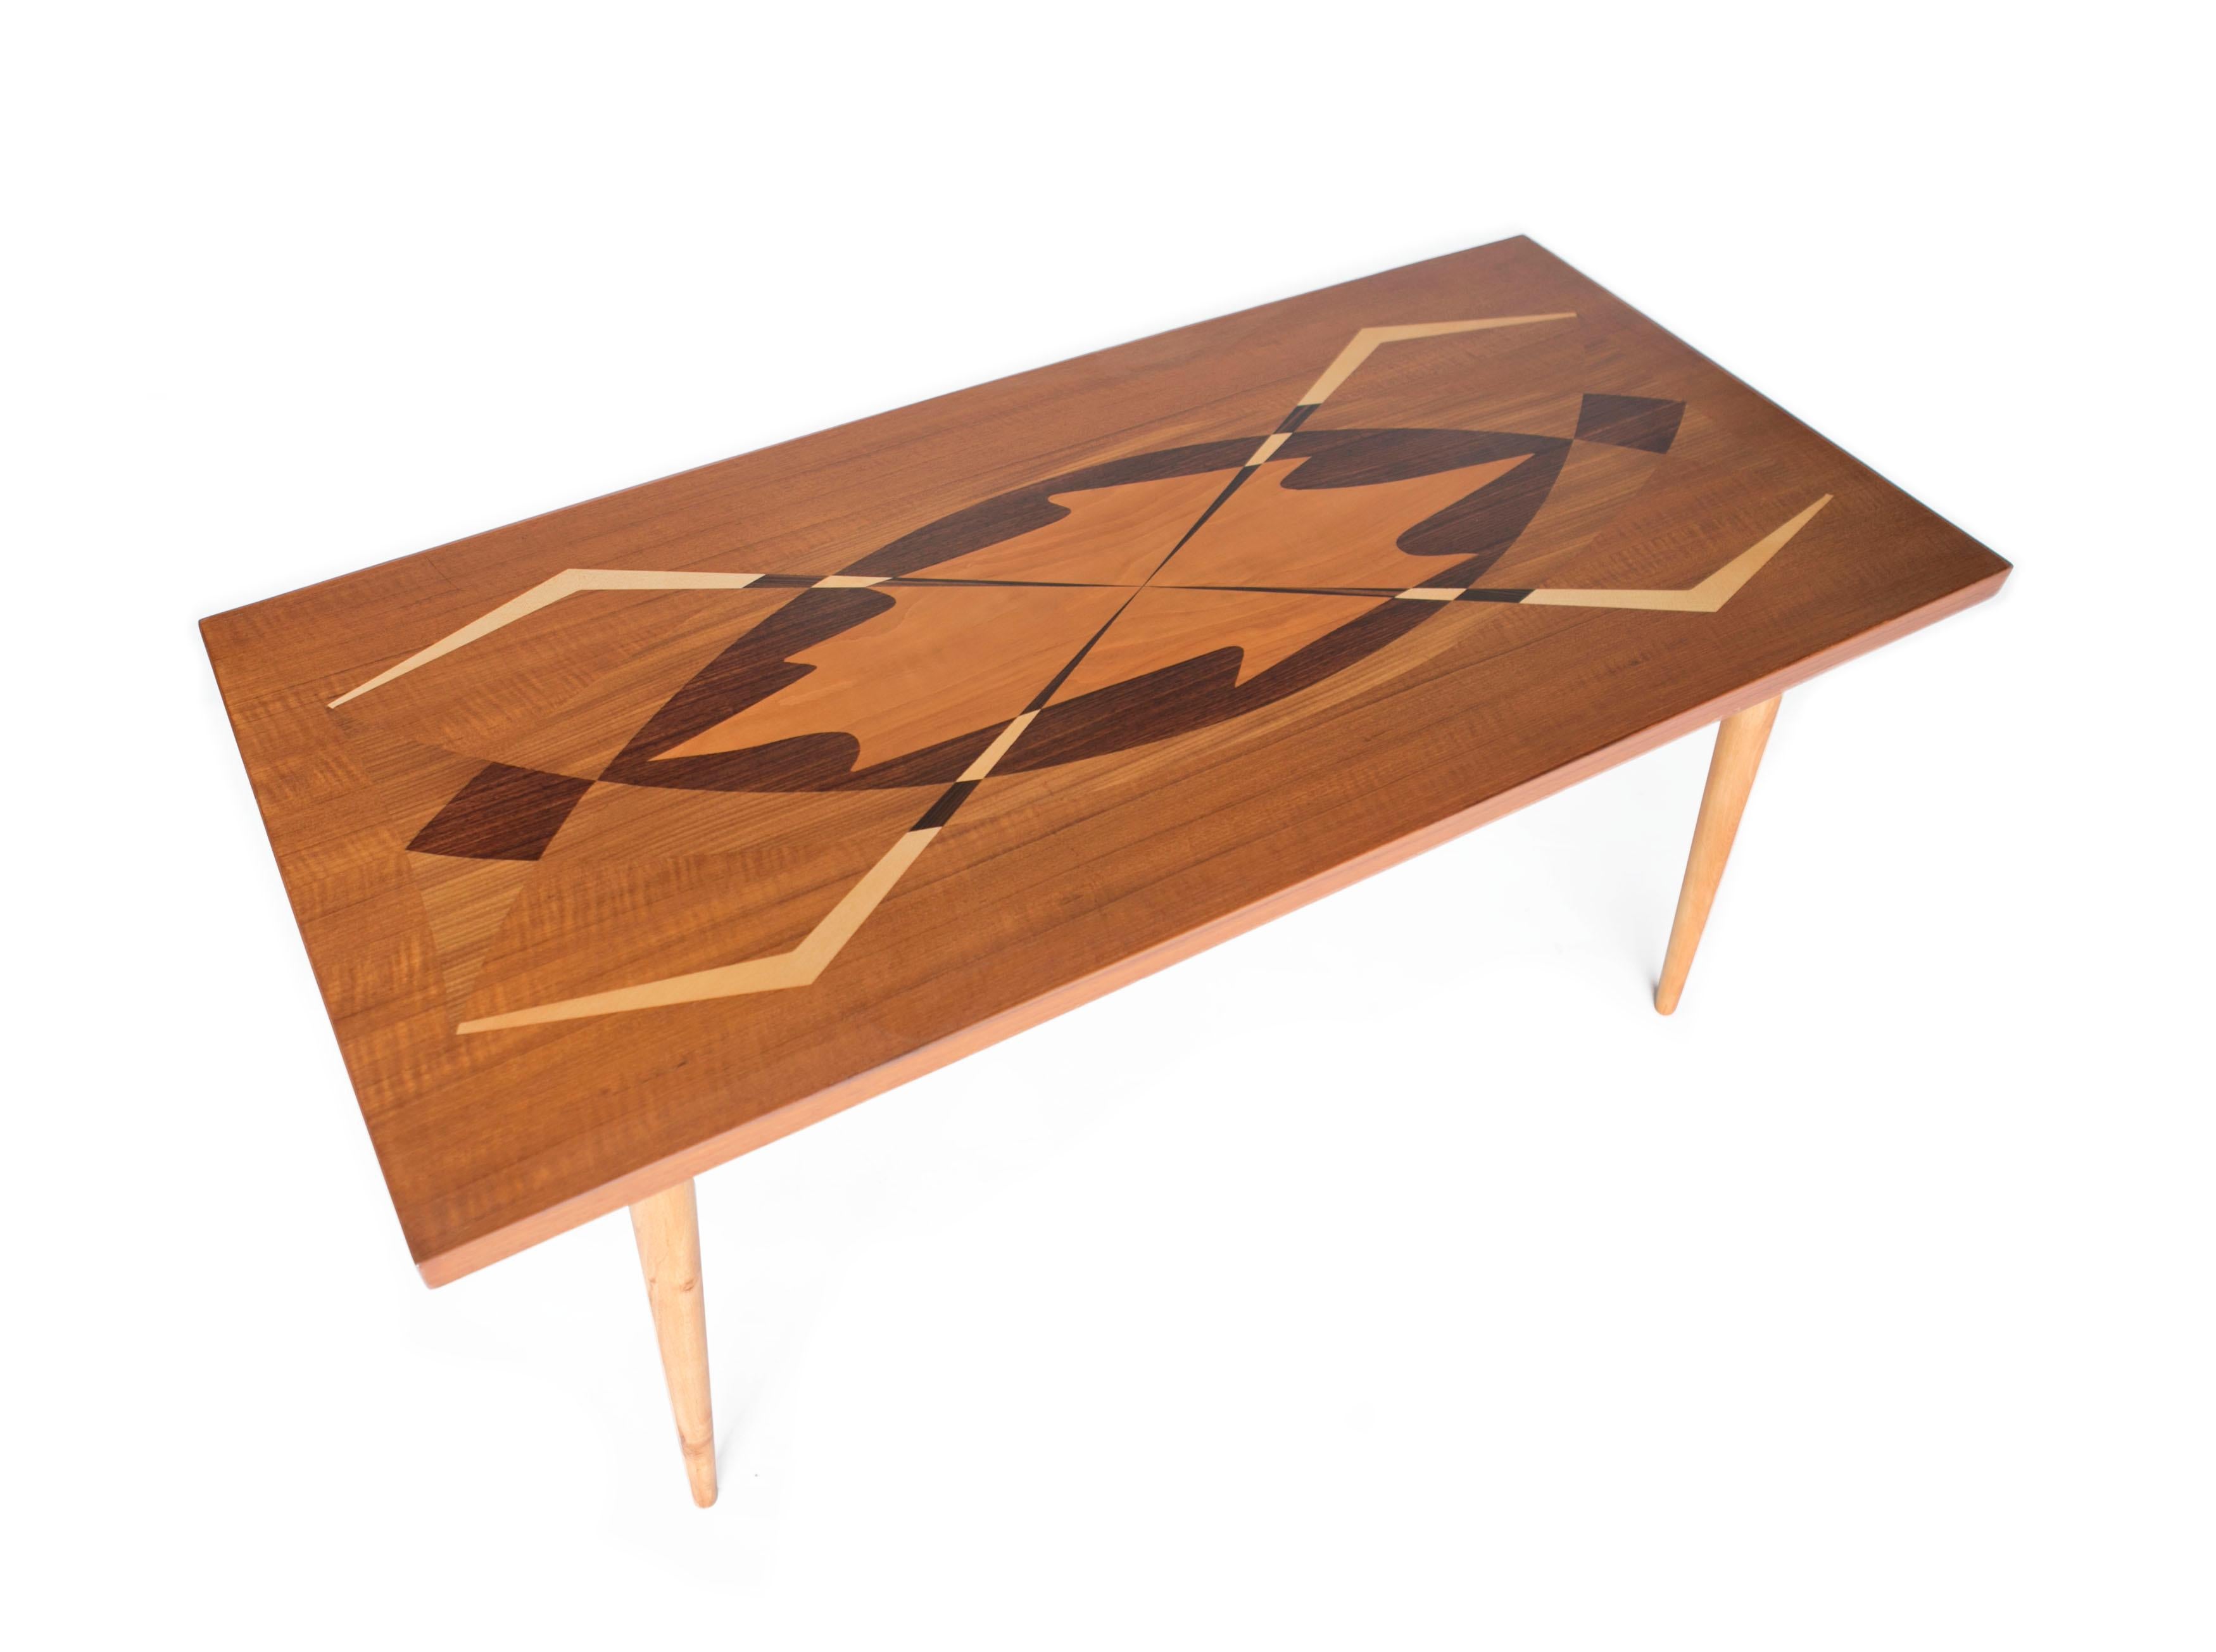 Table basse moderne suédoise avec incrustation de bois exotique, Suède, années 1950

Il s'agit d'une table basse suédoise très spéciale avec du bois exotique incrusté dans des motifs graphiques très midcentury. Le fabricant est inconnu, mais il